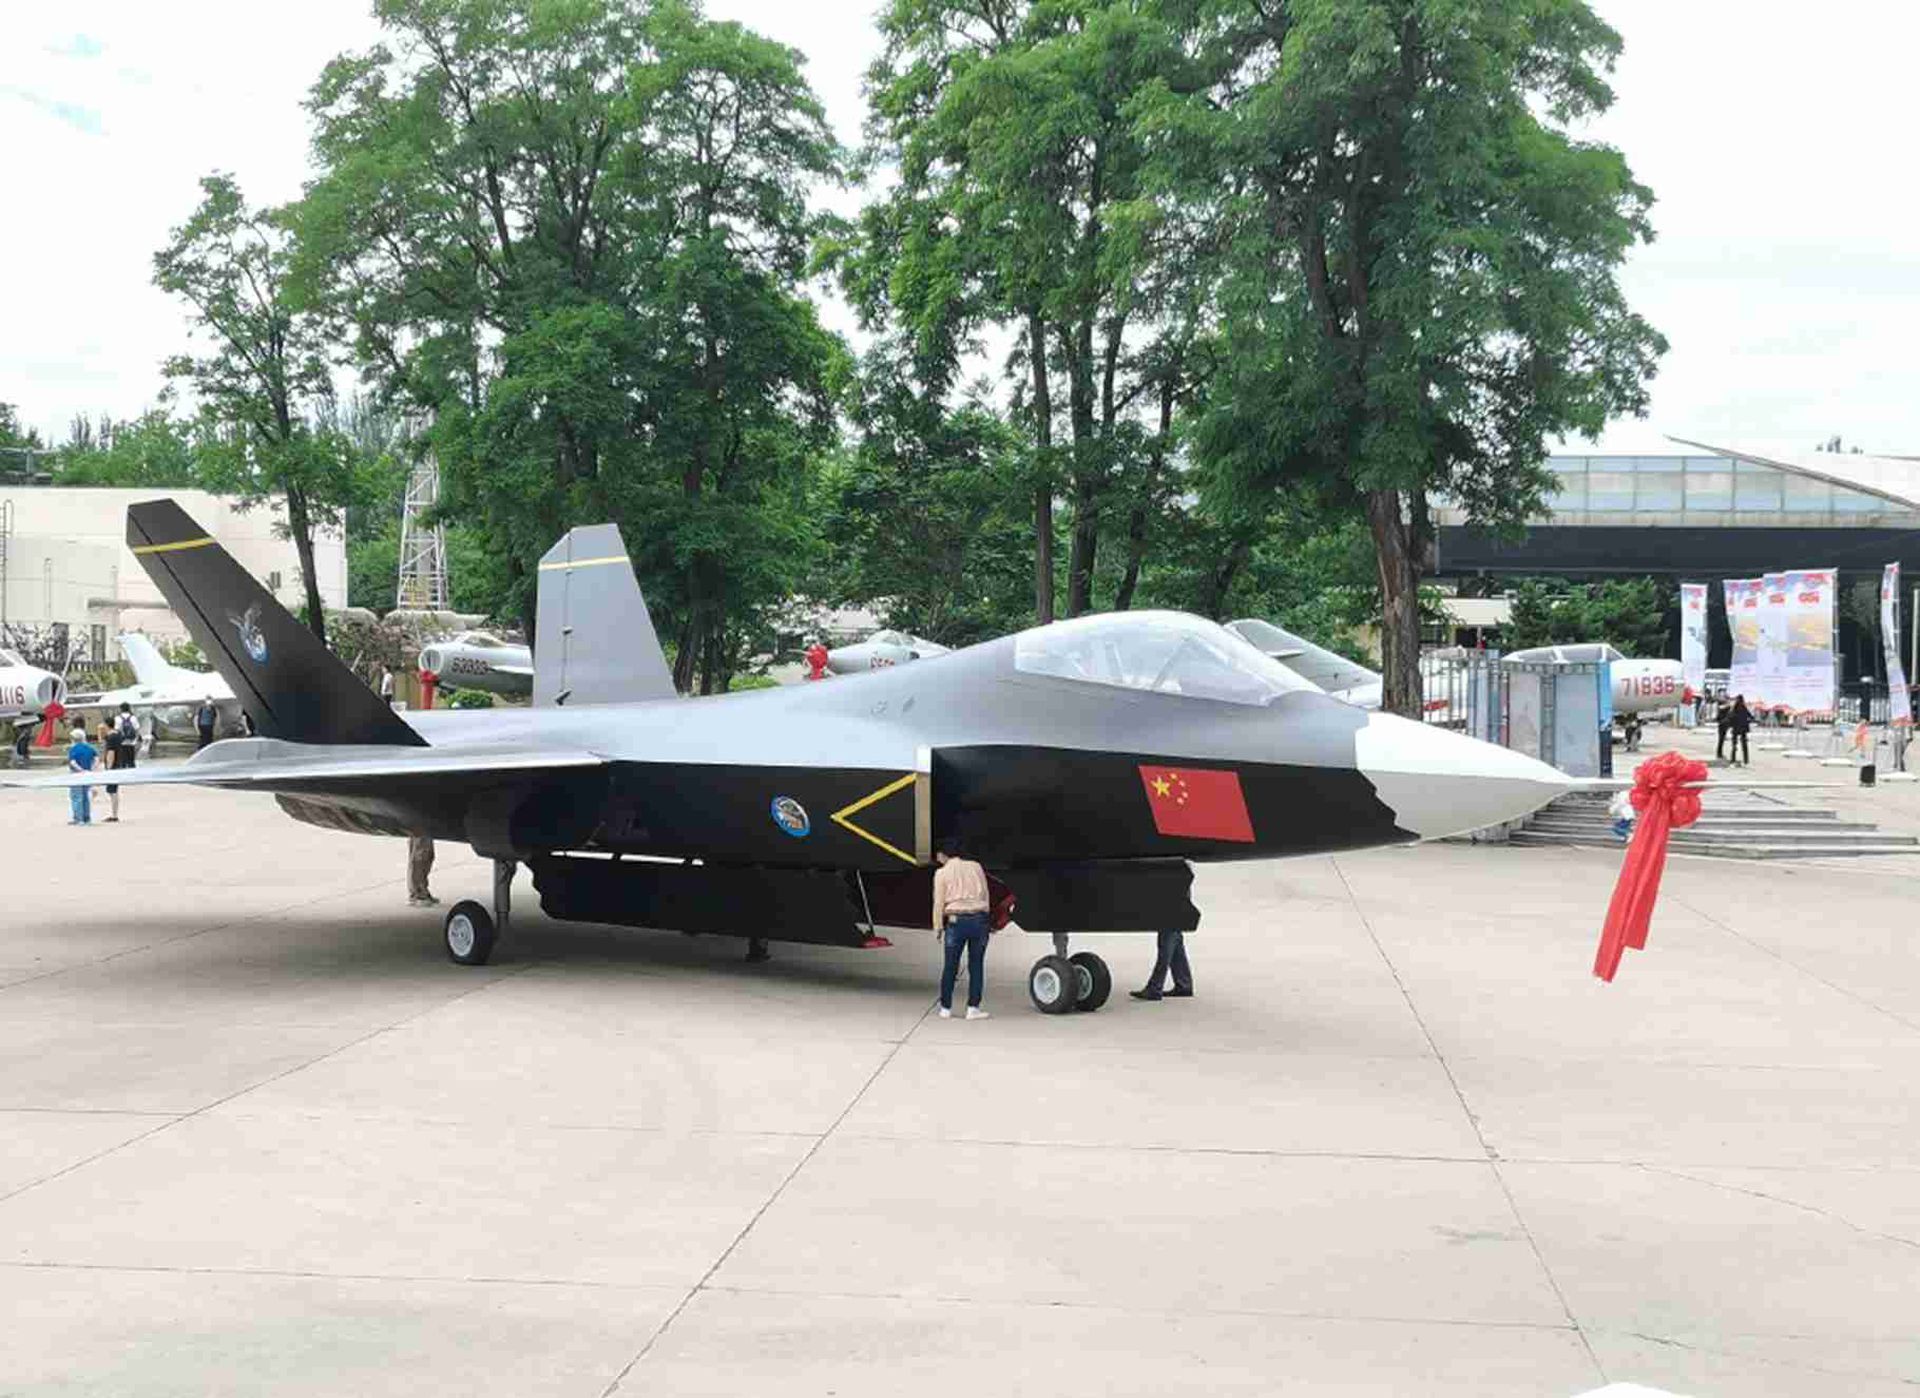 沈飞航空博览园最新展出的歼-31。这是网友拍下的高清照。（微博@柳絮纷飞竟不是雪）